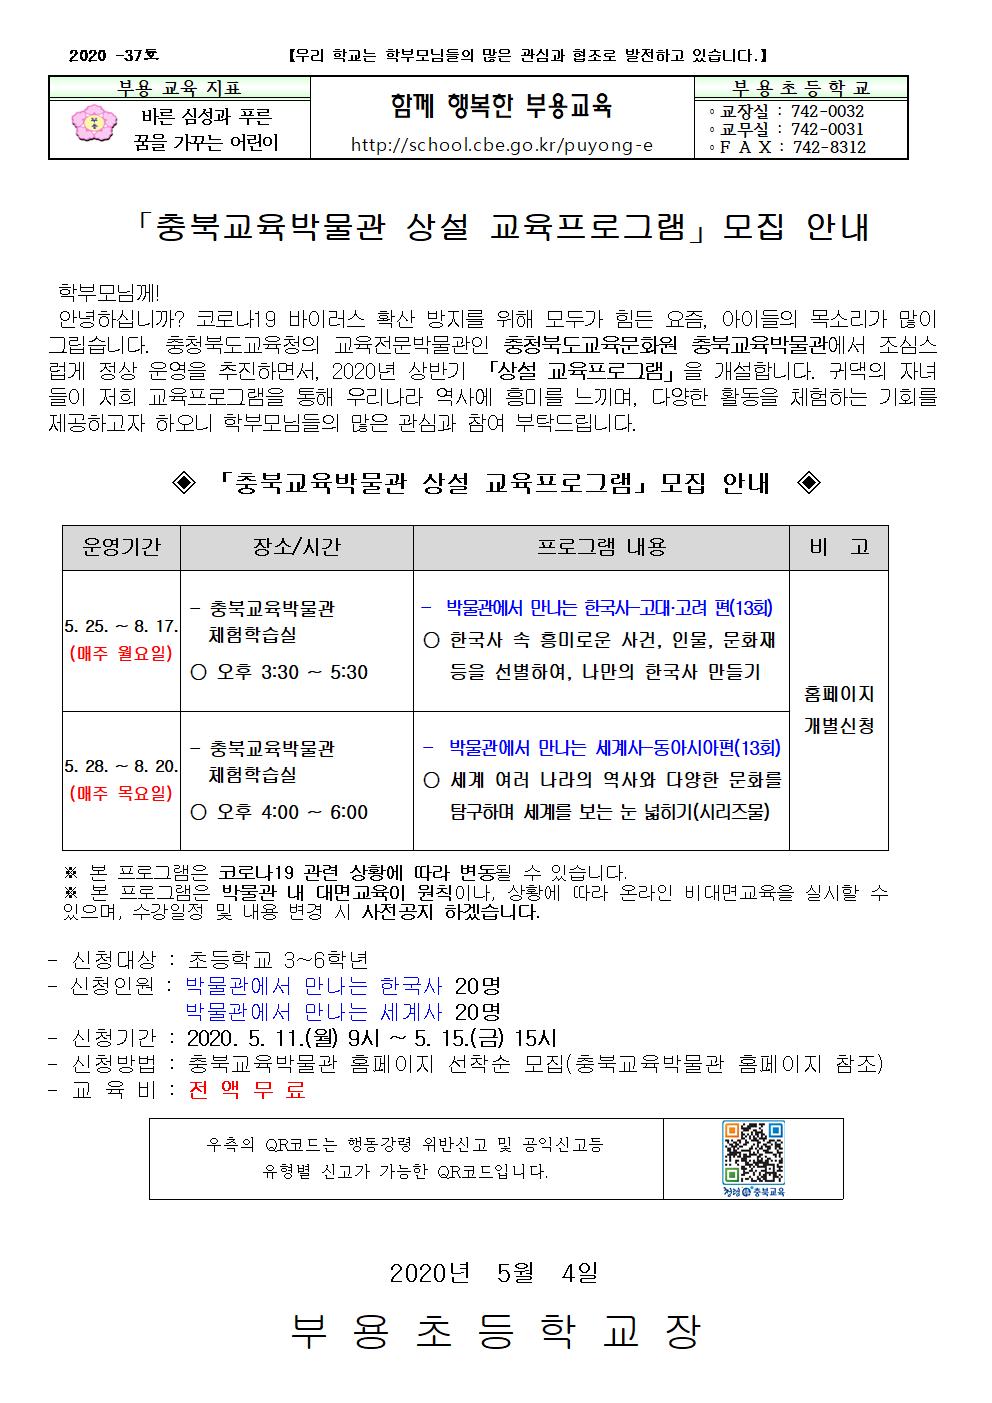 37호-충북교육박물관 상설 교육프로그램 모집 안내001